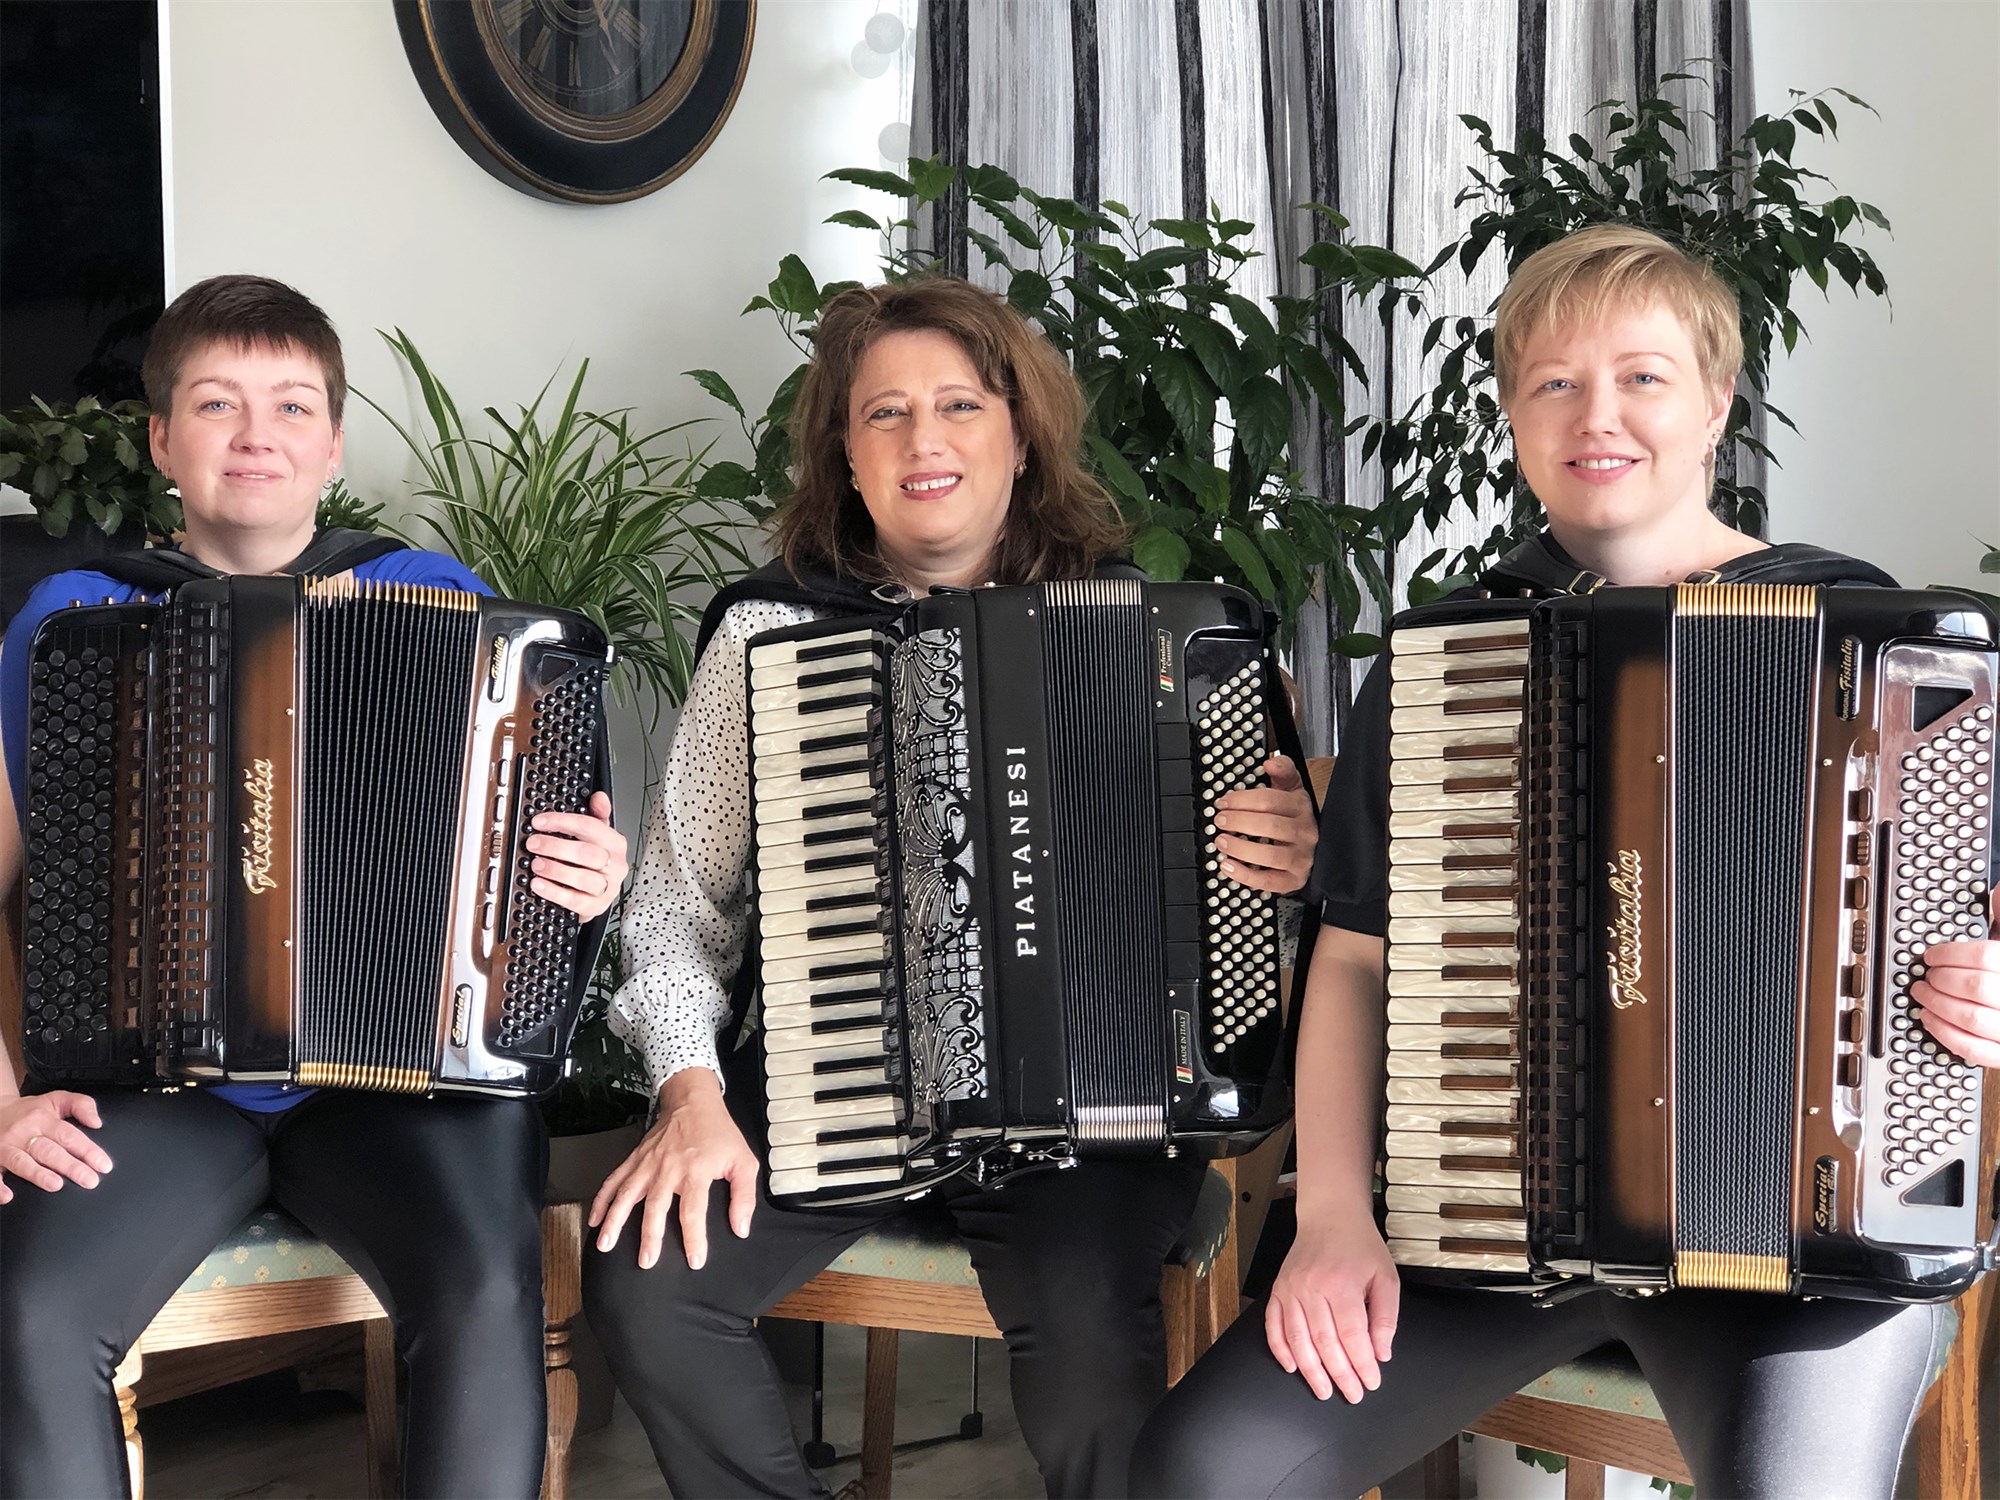 Harmonikkuvinkonurnar, frá vinstri, Elsa Auður, María og Agnes Harpa eftir tónleika annan í hvítasunnu 2021 í Lóni á Akureyri.